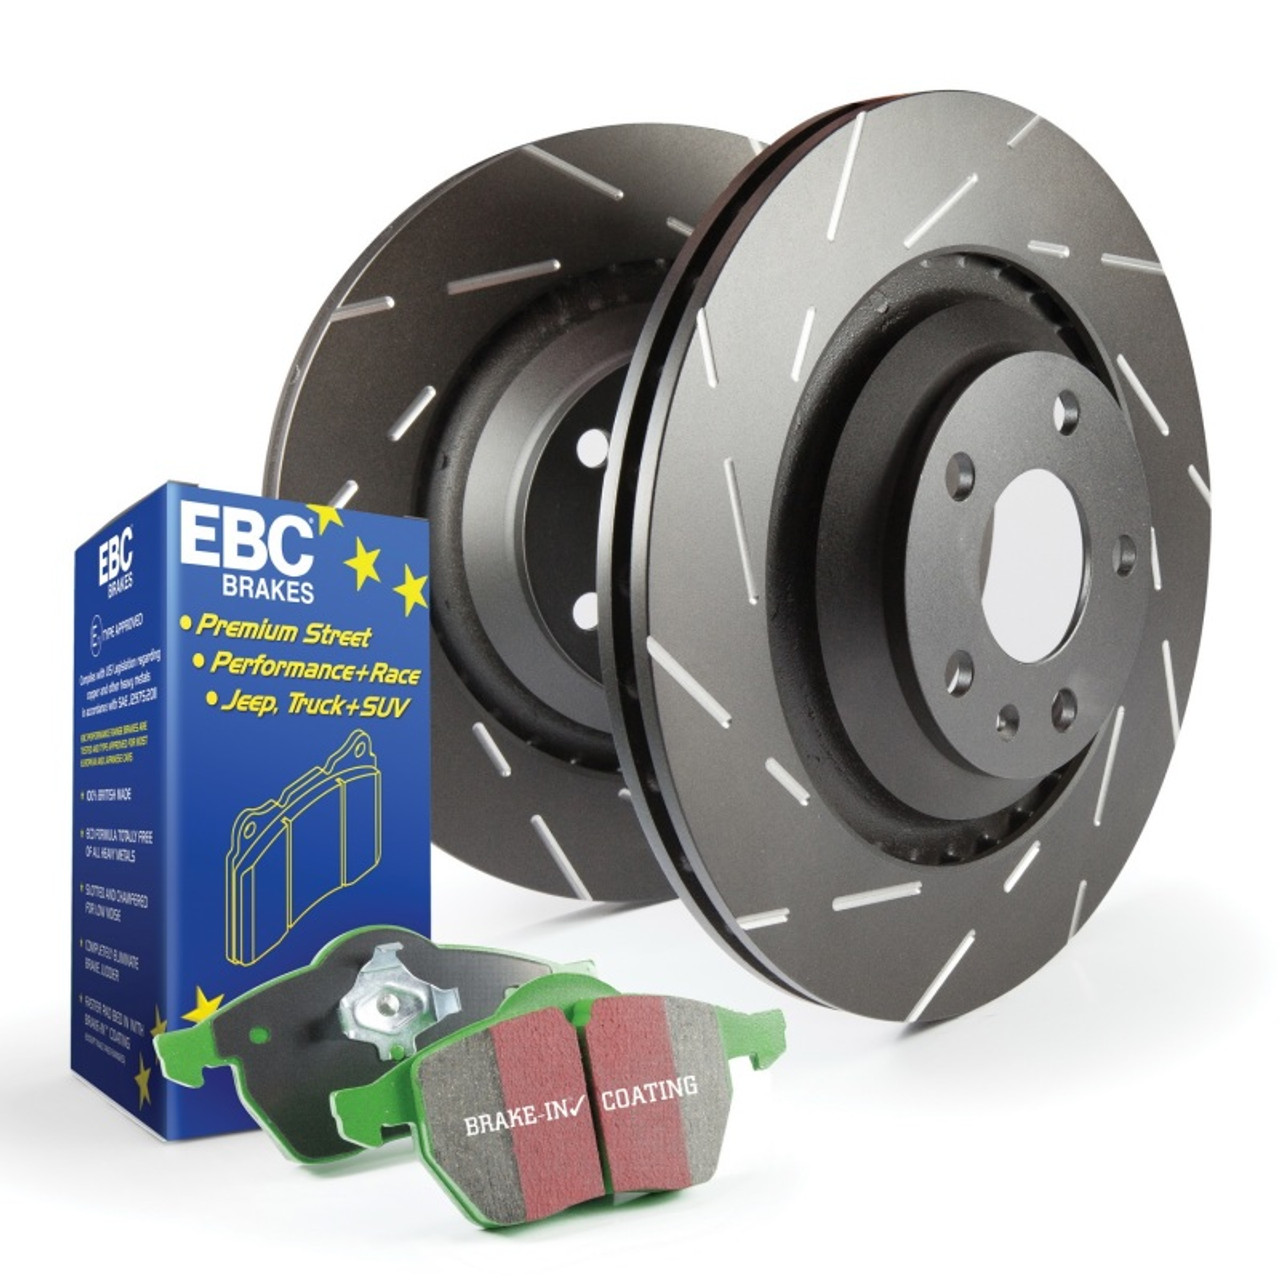 EBC S2 Kits Greenstuff Pads and USR Rotors - S2KF1852 Photo - Primary